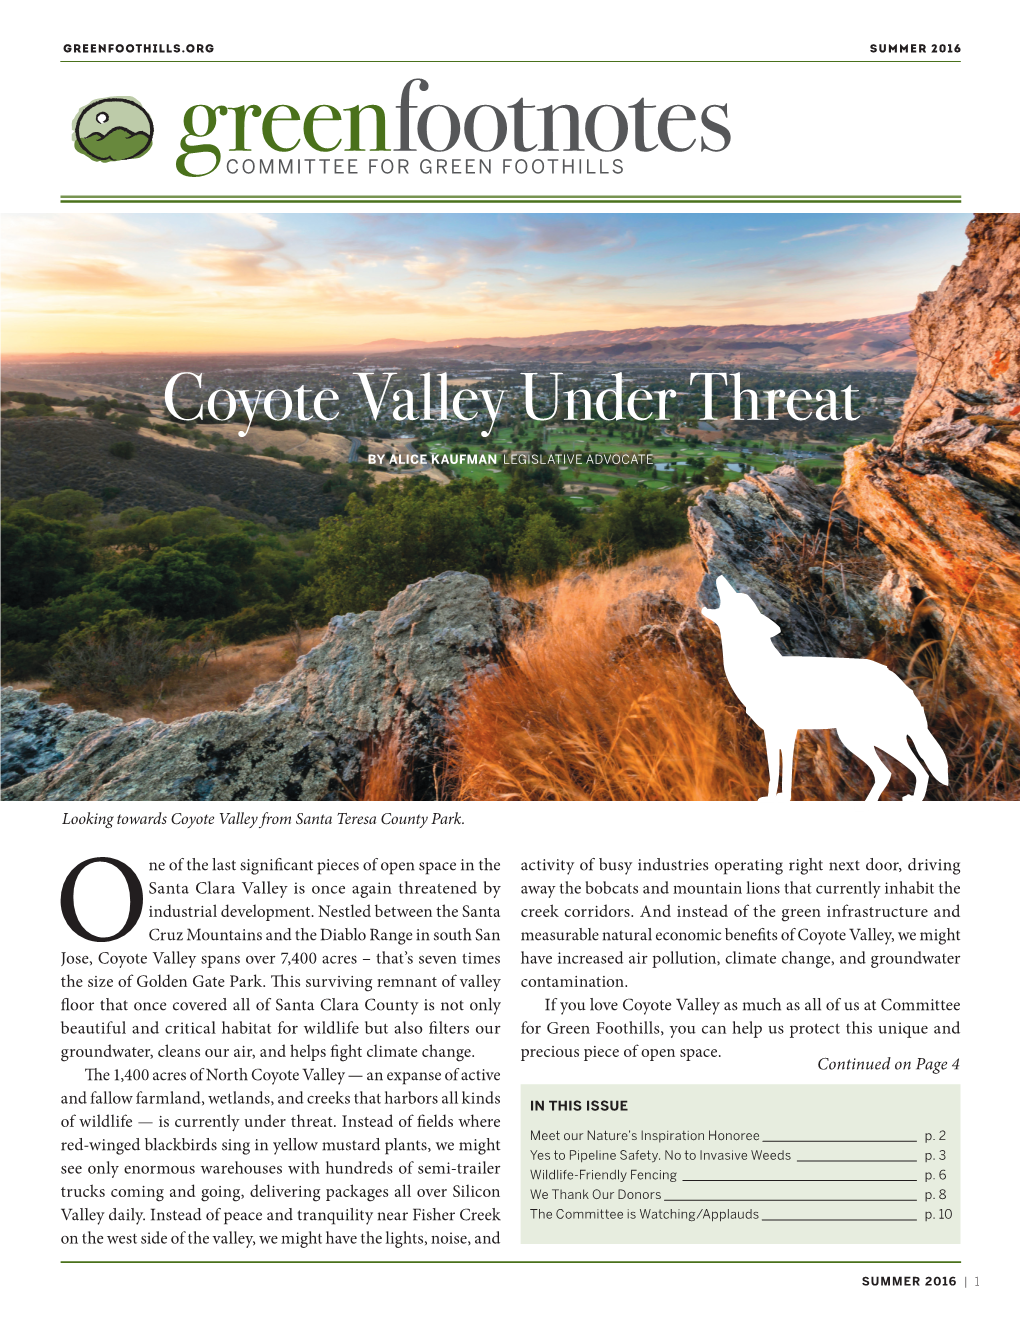 Coyote Valley Under Threat